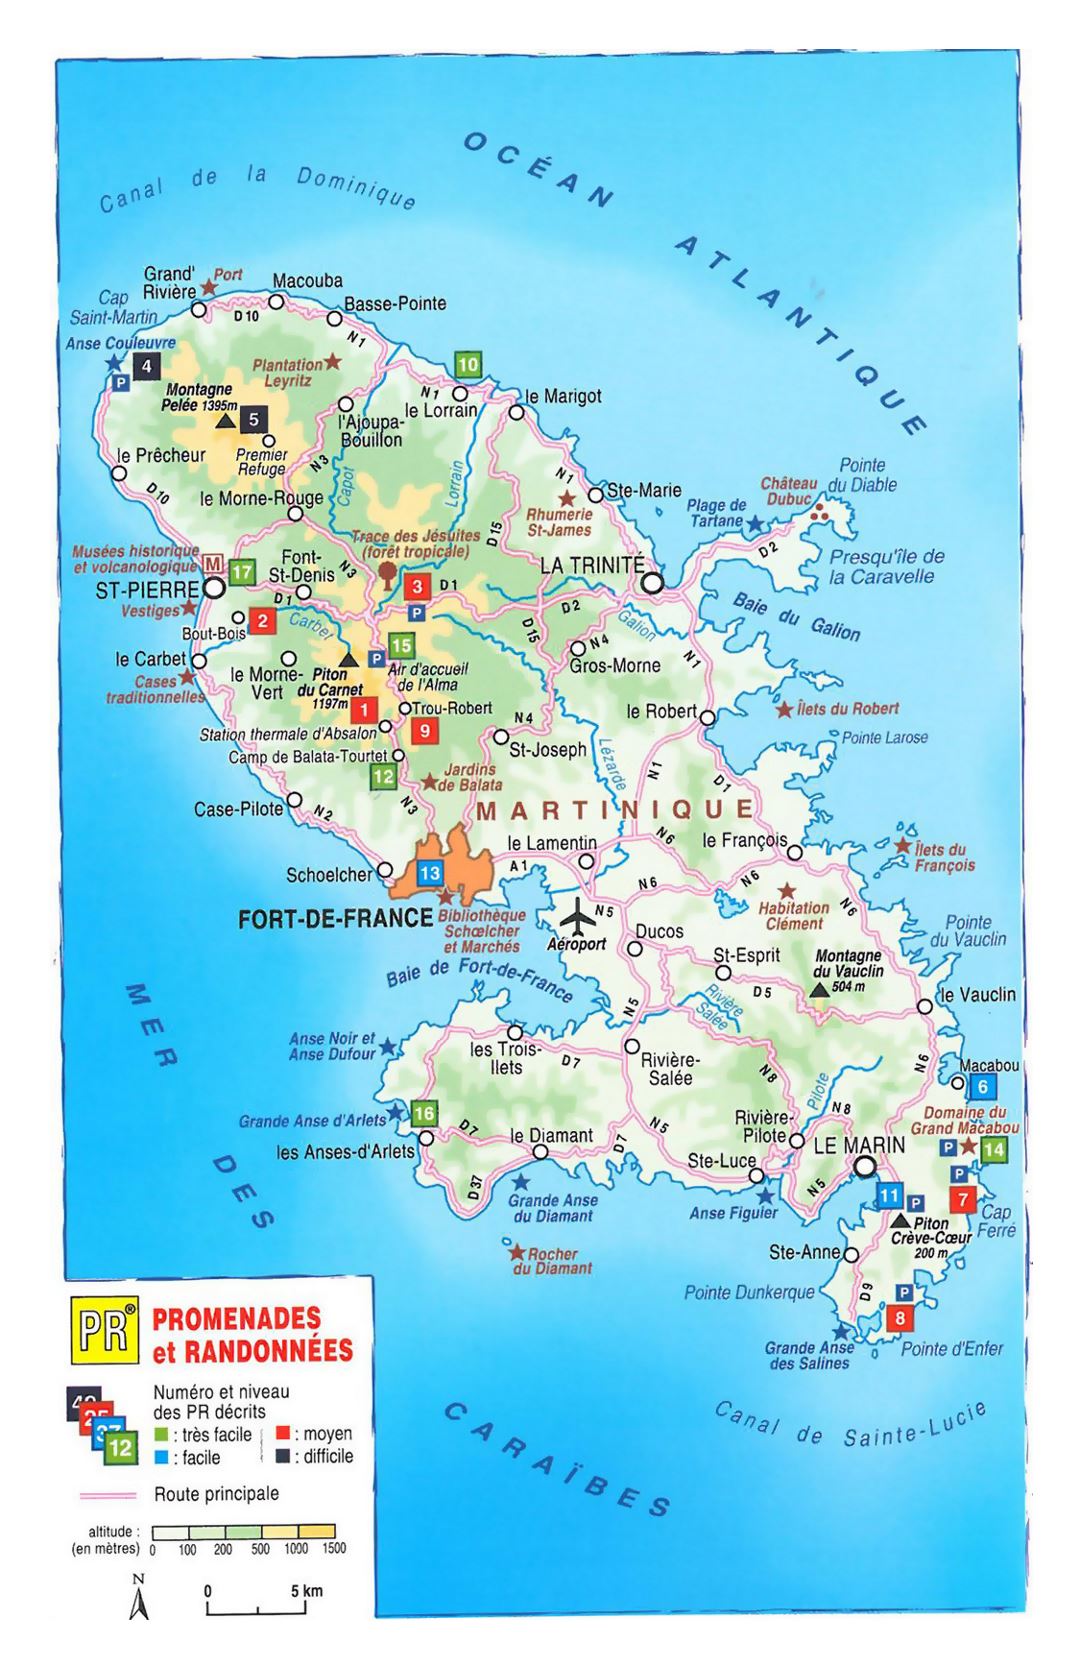 Детальная карта высот Мартиники с другими пометками